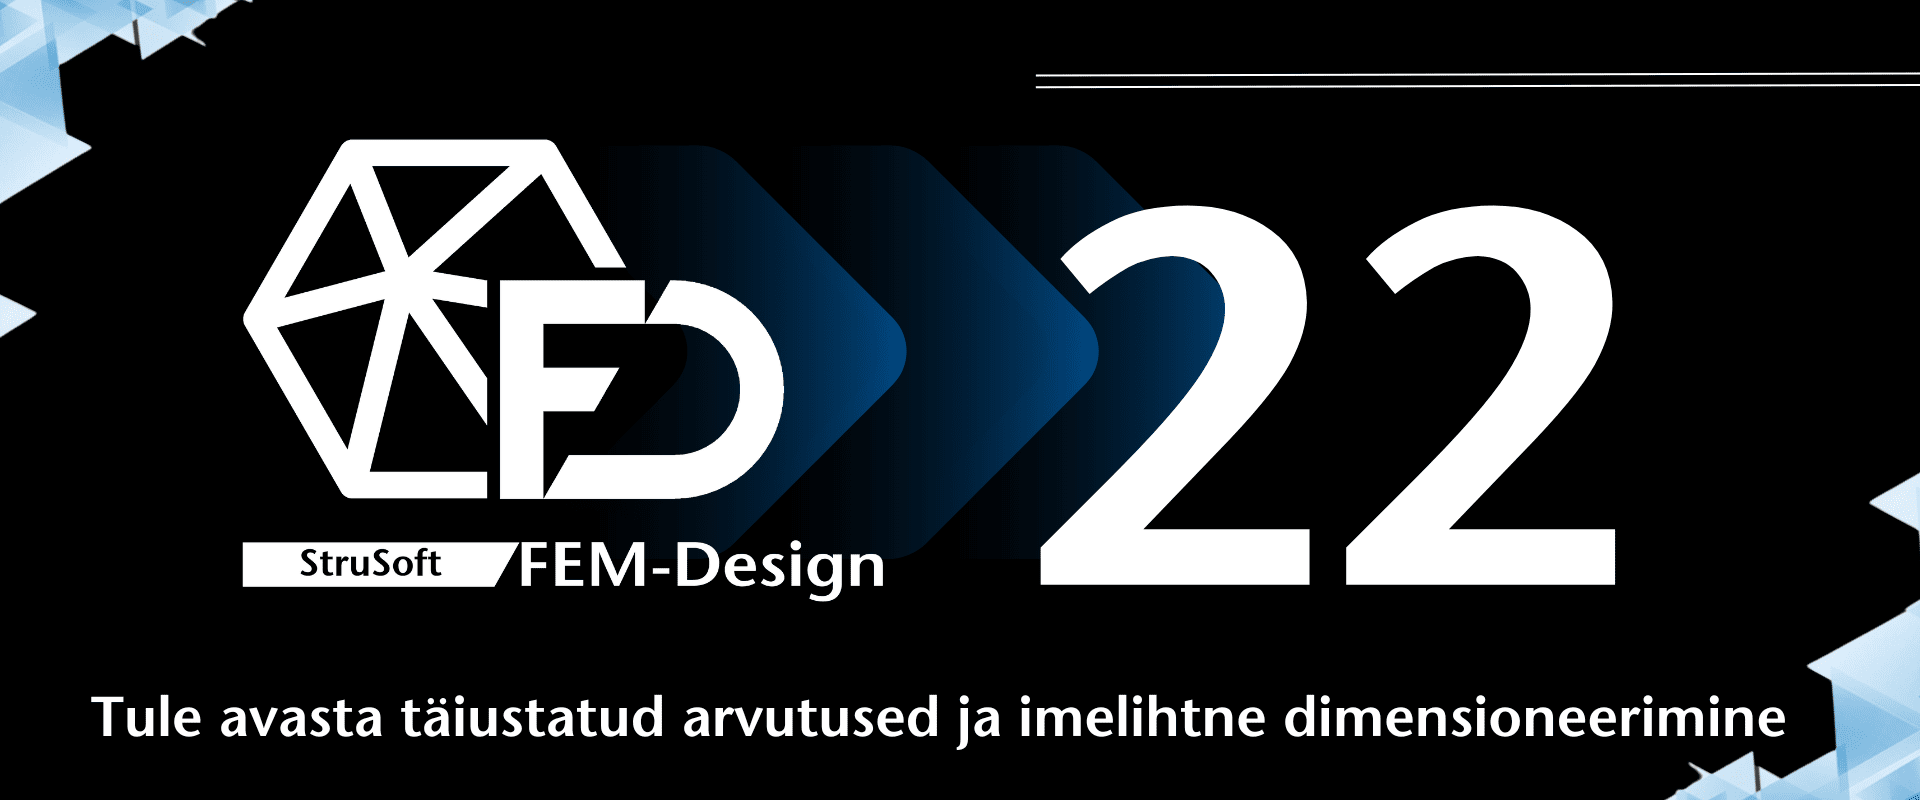 FEM-Design 22 on nüüd saadaval